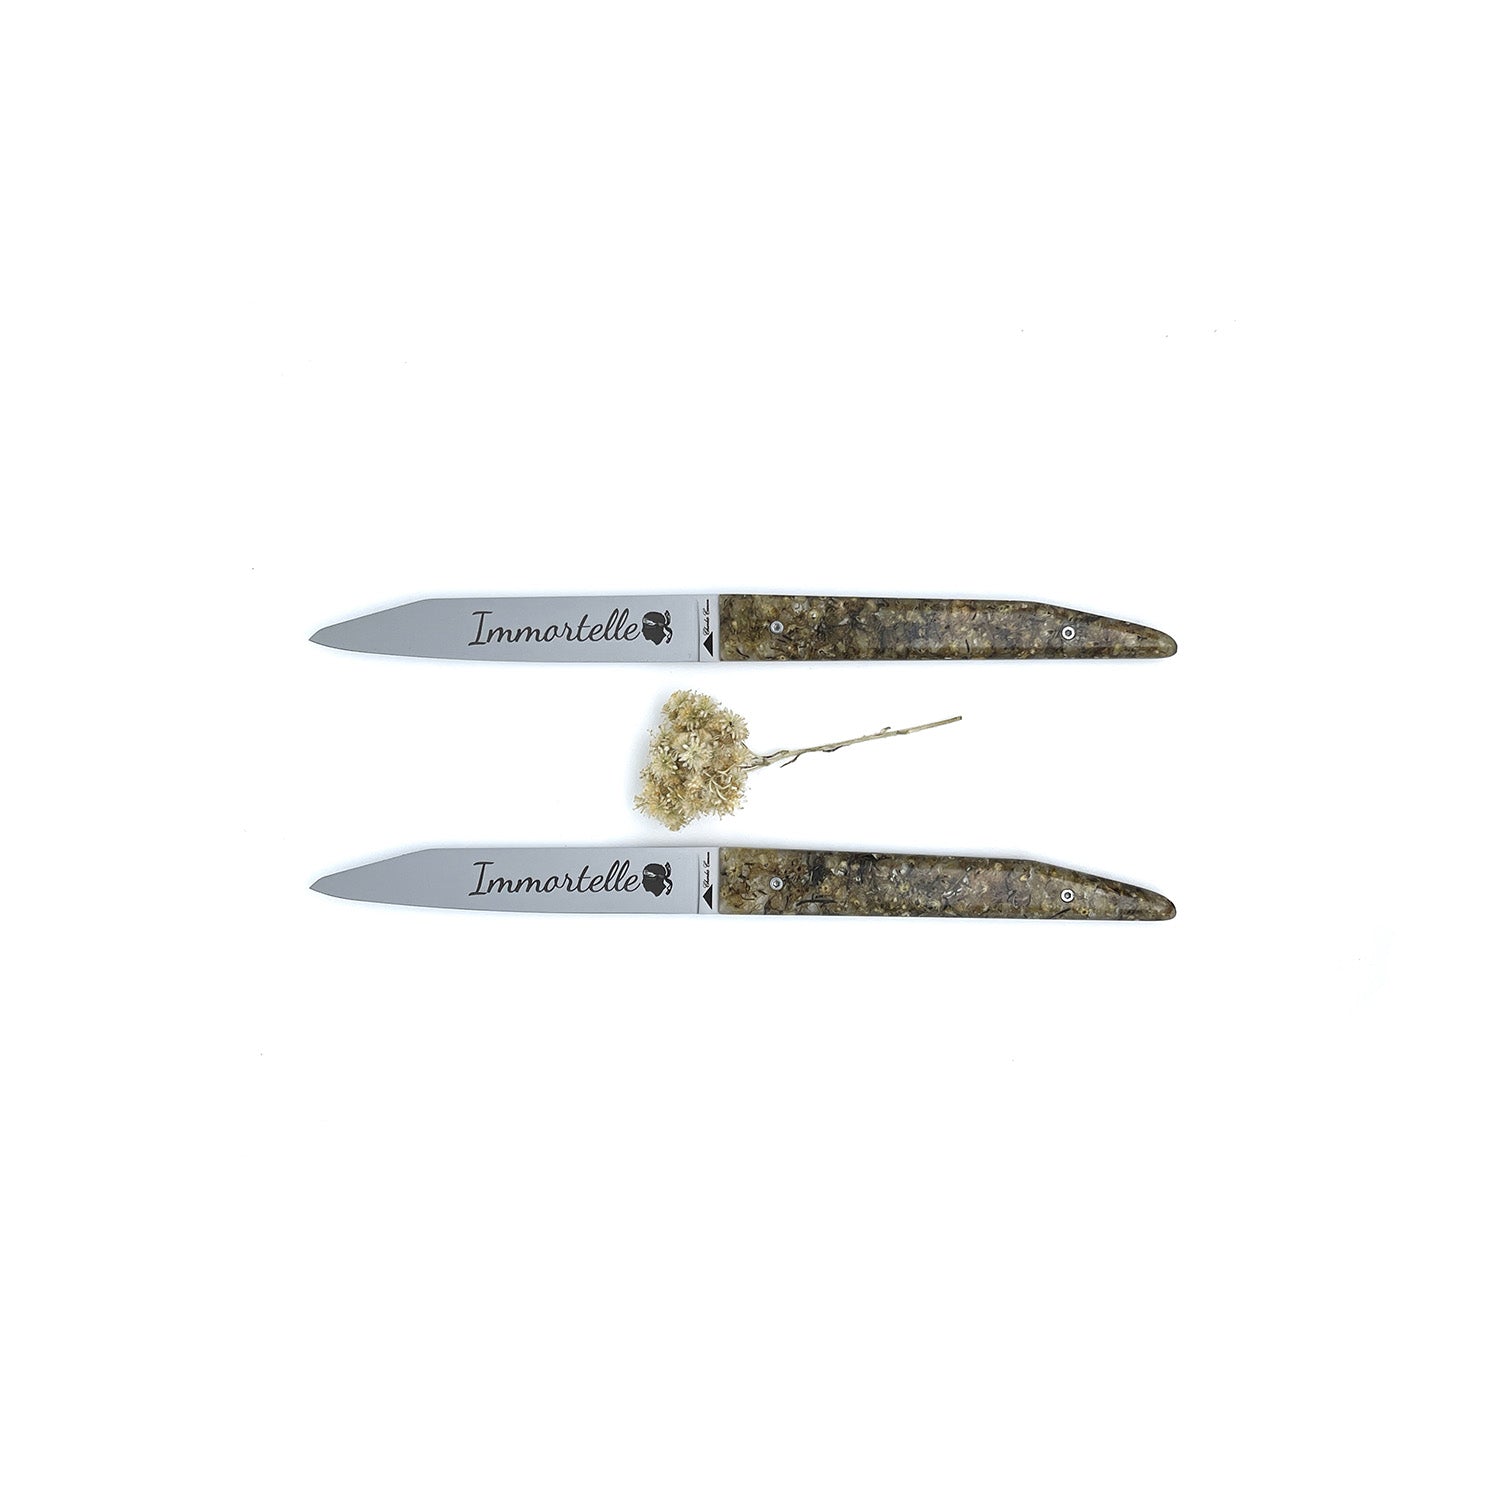 Coffret duo: 2 couteaux de table avec des manches en fleurs d'immortelles